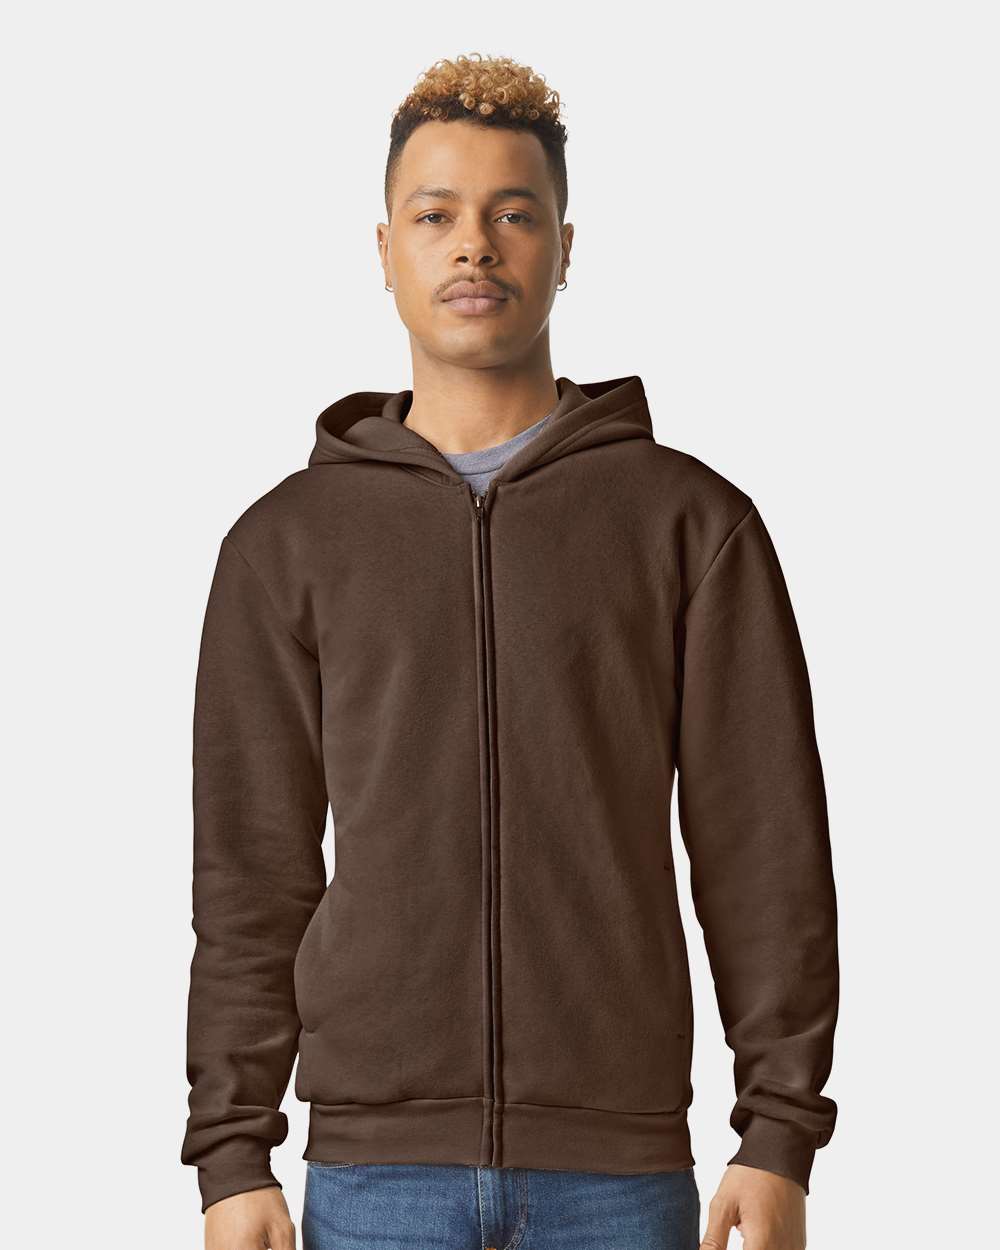 https://images.shirtspace.com/fullsize/Q%2BfQZLdFurzQKc9sPXMCEQ%3D%3D/454714/21594-american-apparel-rf497-reflex-fleece-unisex-full-zip-hoodie-front-brown.jpg